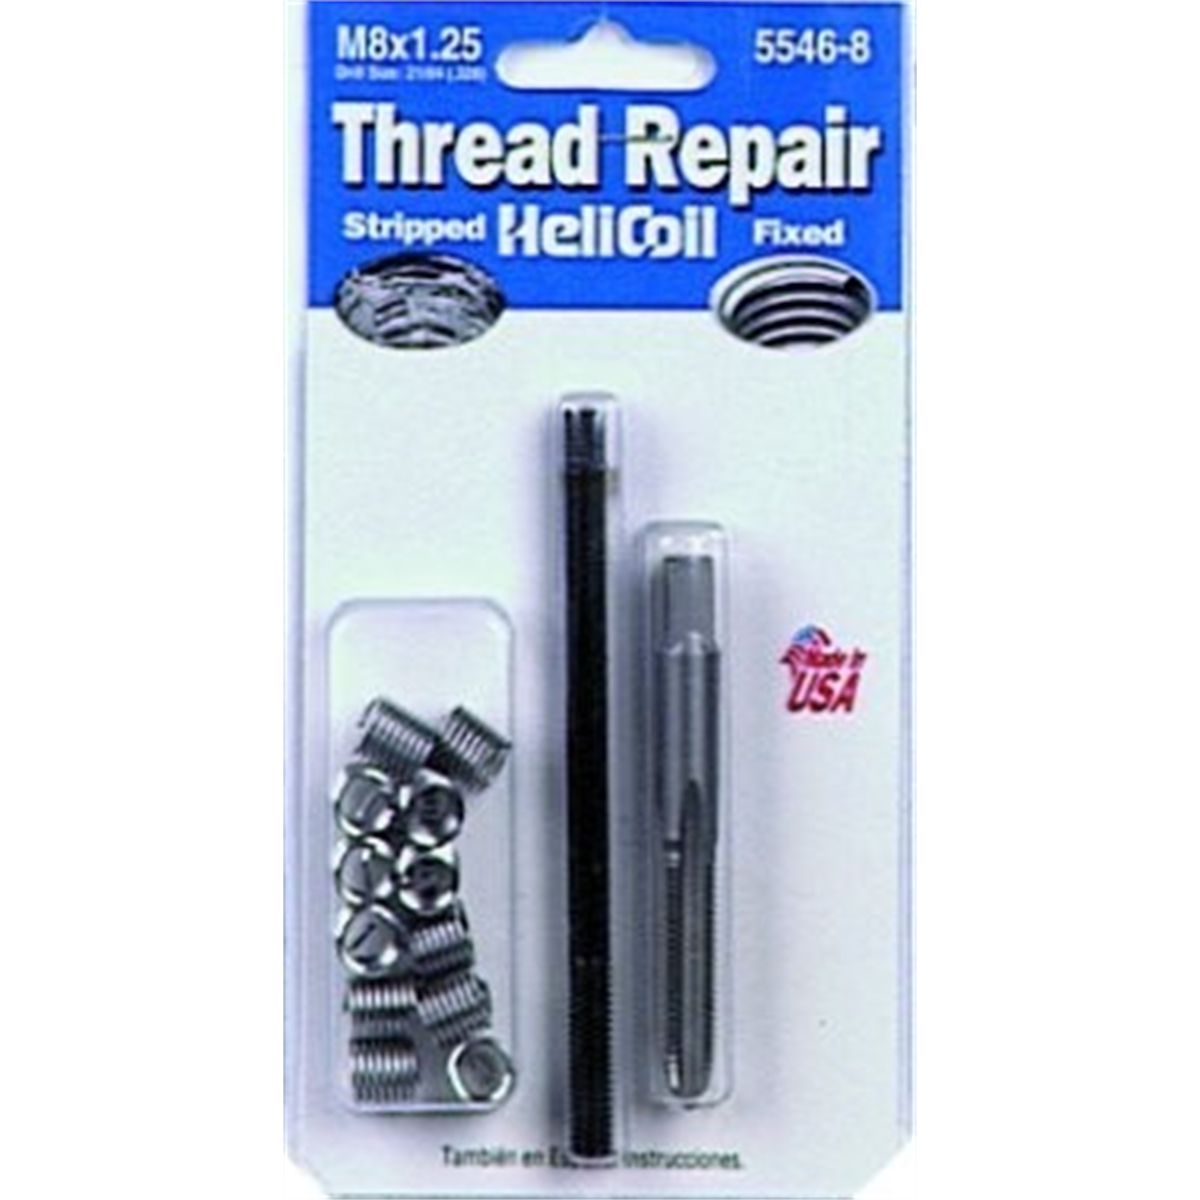 Helicoil Thread Inserts 3/16 x 9/32" New 14 Inserts Dorman Fix-A-Thread 10-24 